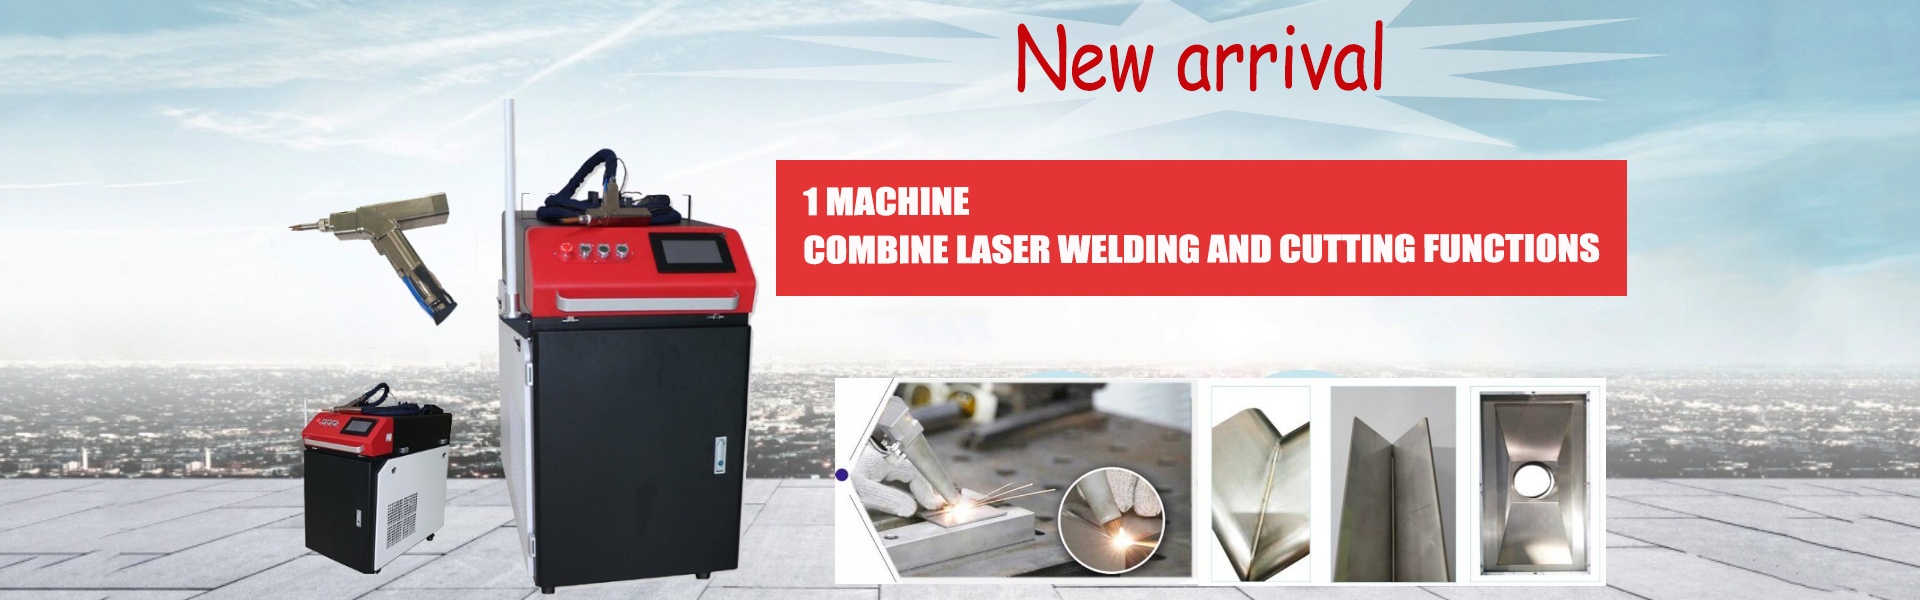 laserowa maszyna do spawania, laserowa maszyna do znakowania, spawacz laserowy,Hunan Youmir Laser Technology Co., Ltd.